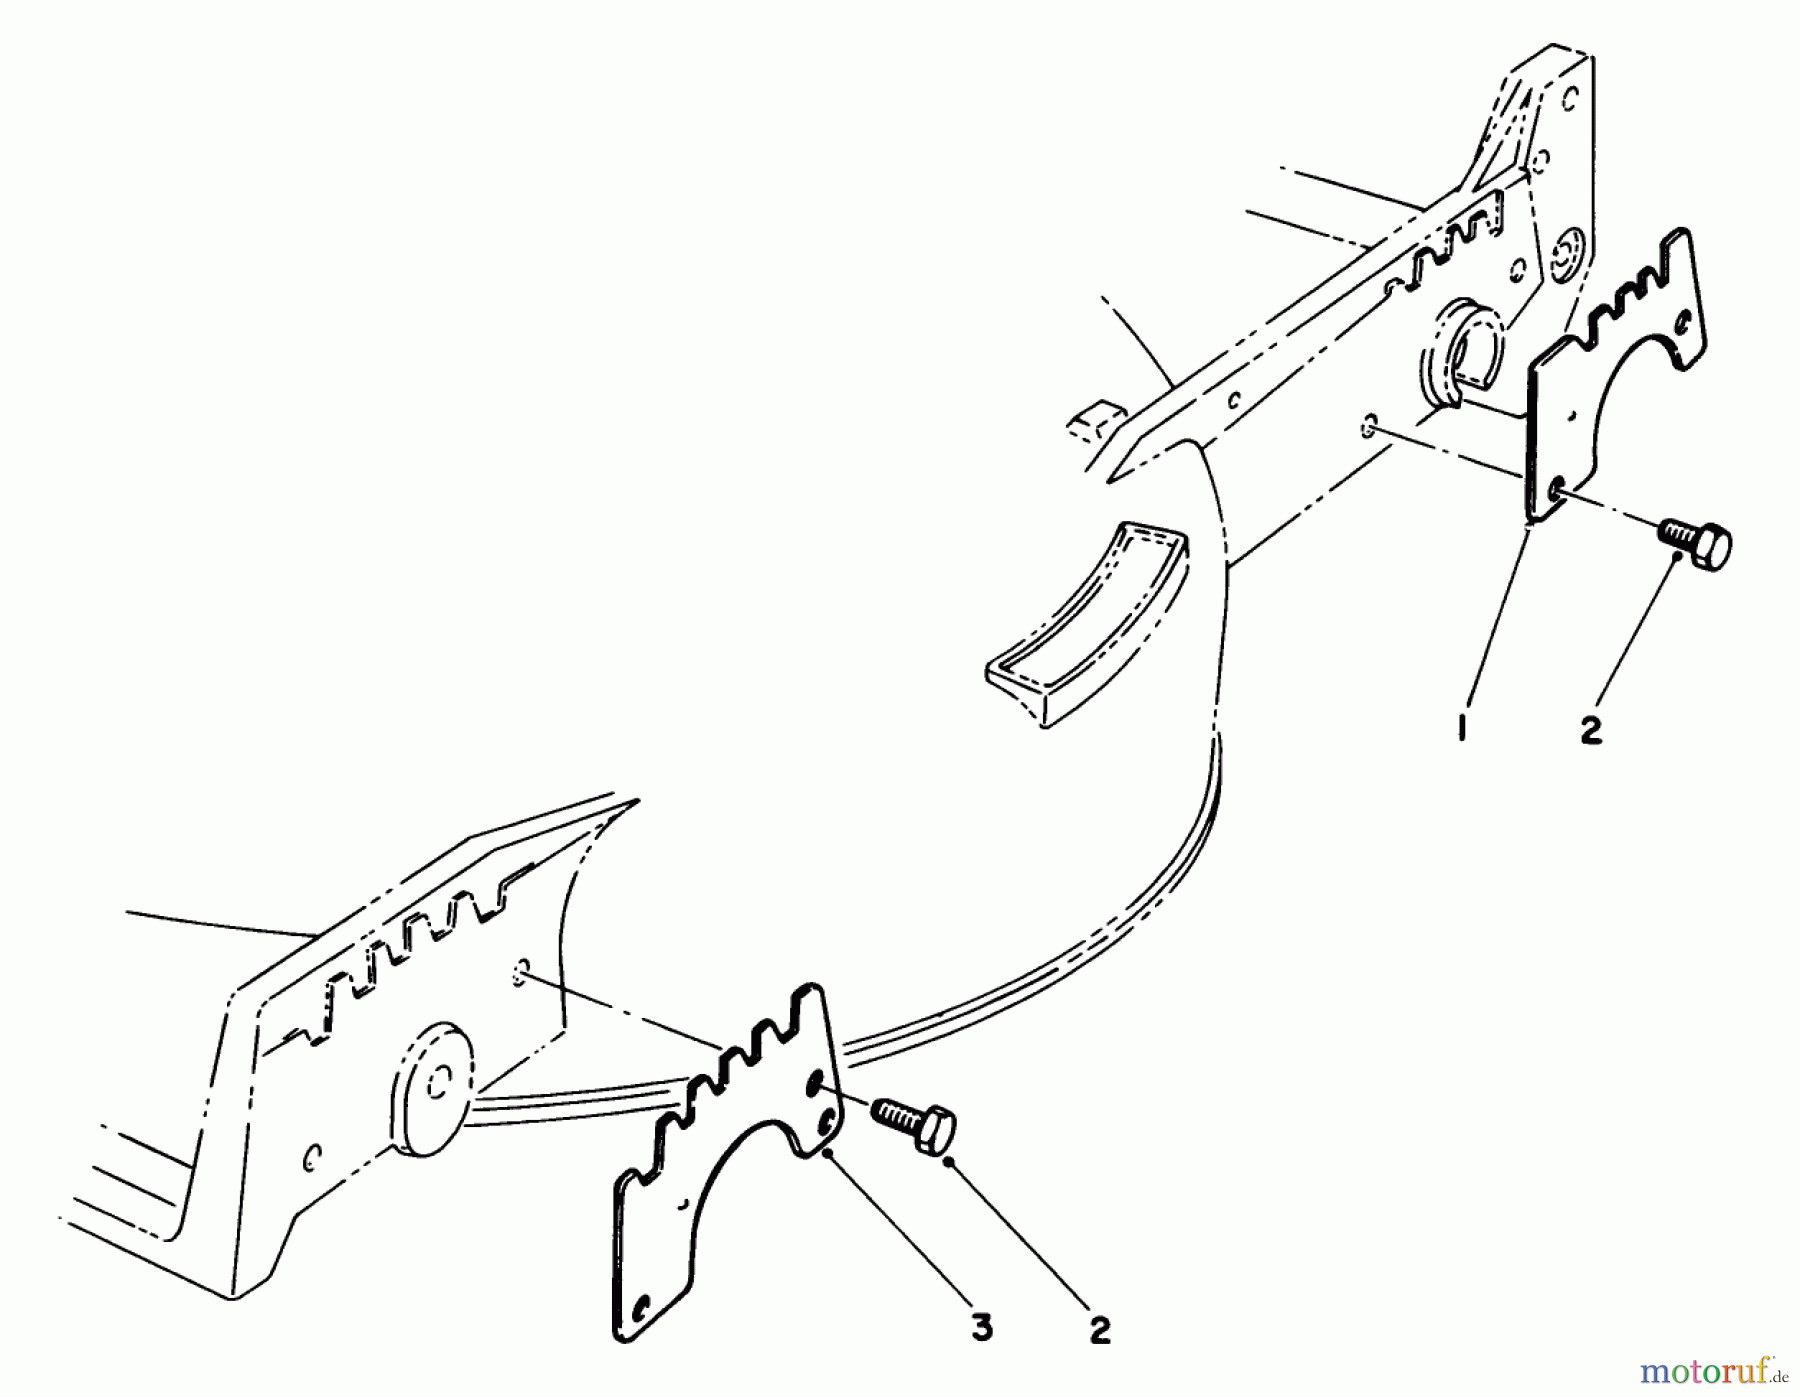  Toro Neu Mowers, Walk-Behind Seite 1 20622 - Toro Lawnmower, 1986 (6000001-6999999) WEAR PLATE KIT NO. 49-4080 (OPTIONAL)